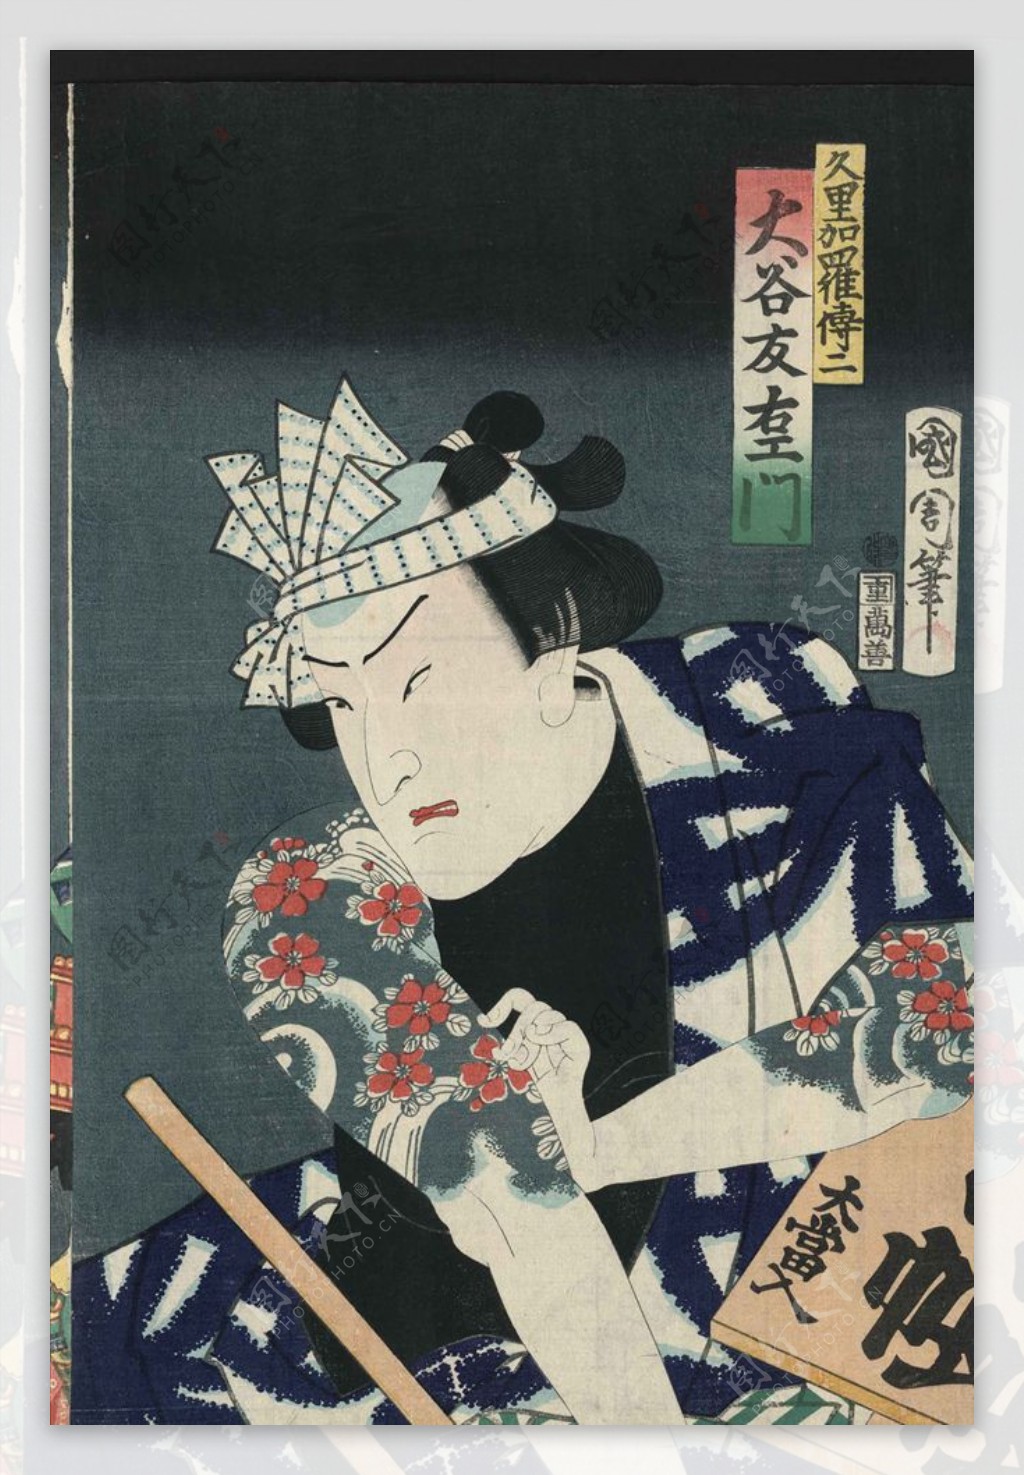 3日本浮世绘国画绘本高清图集